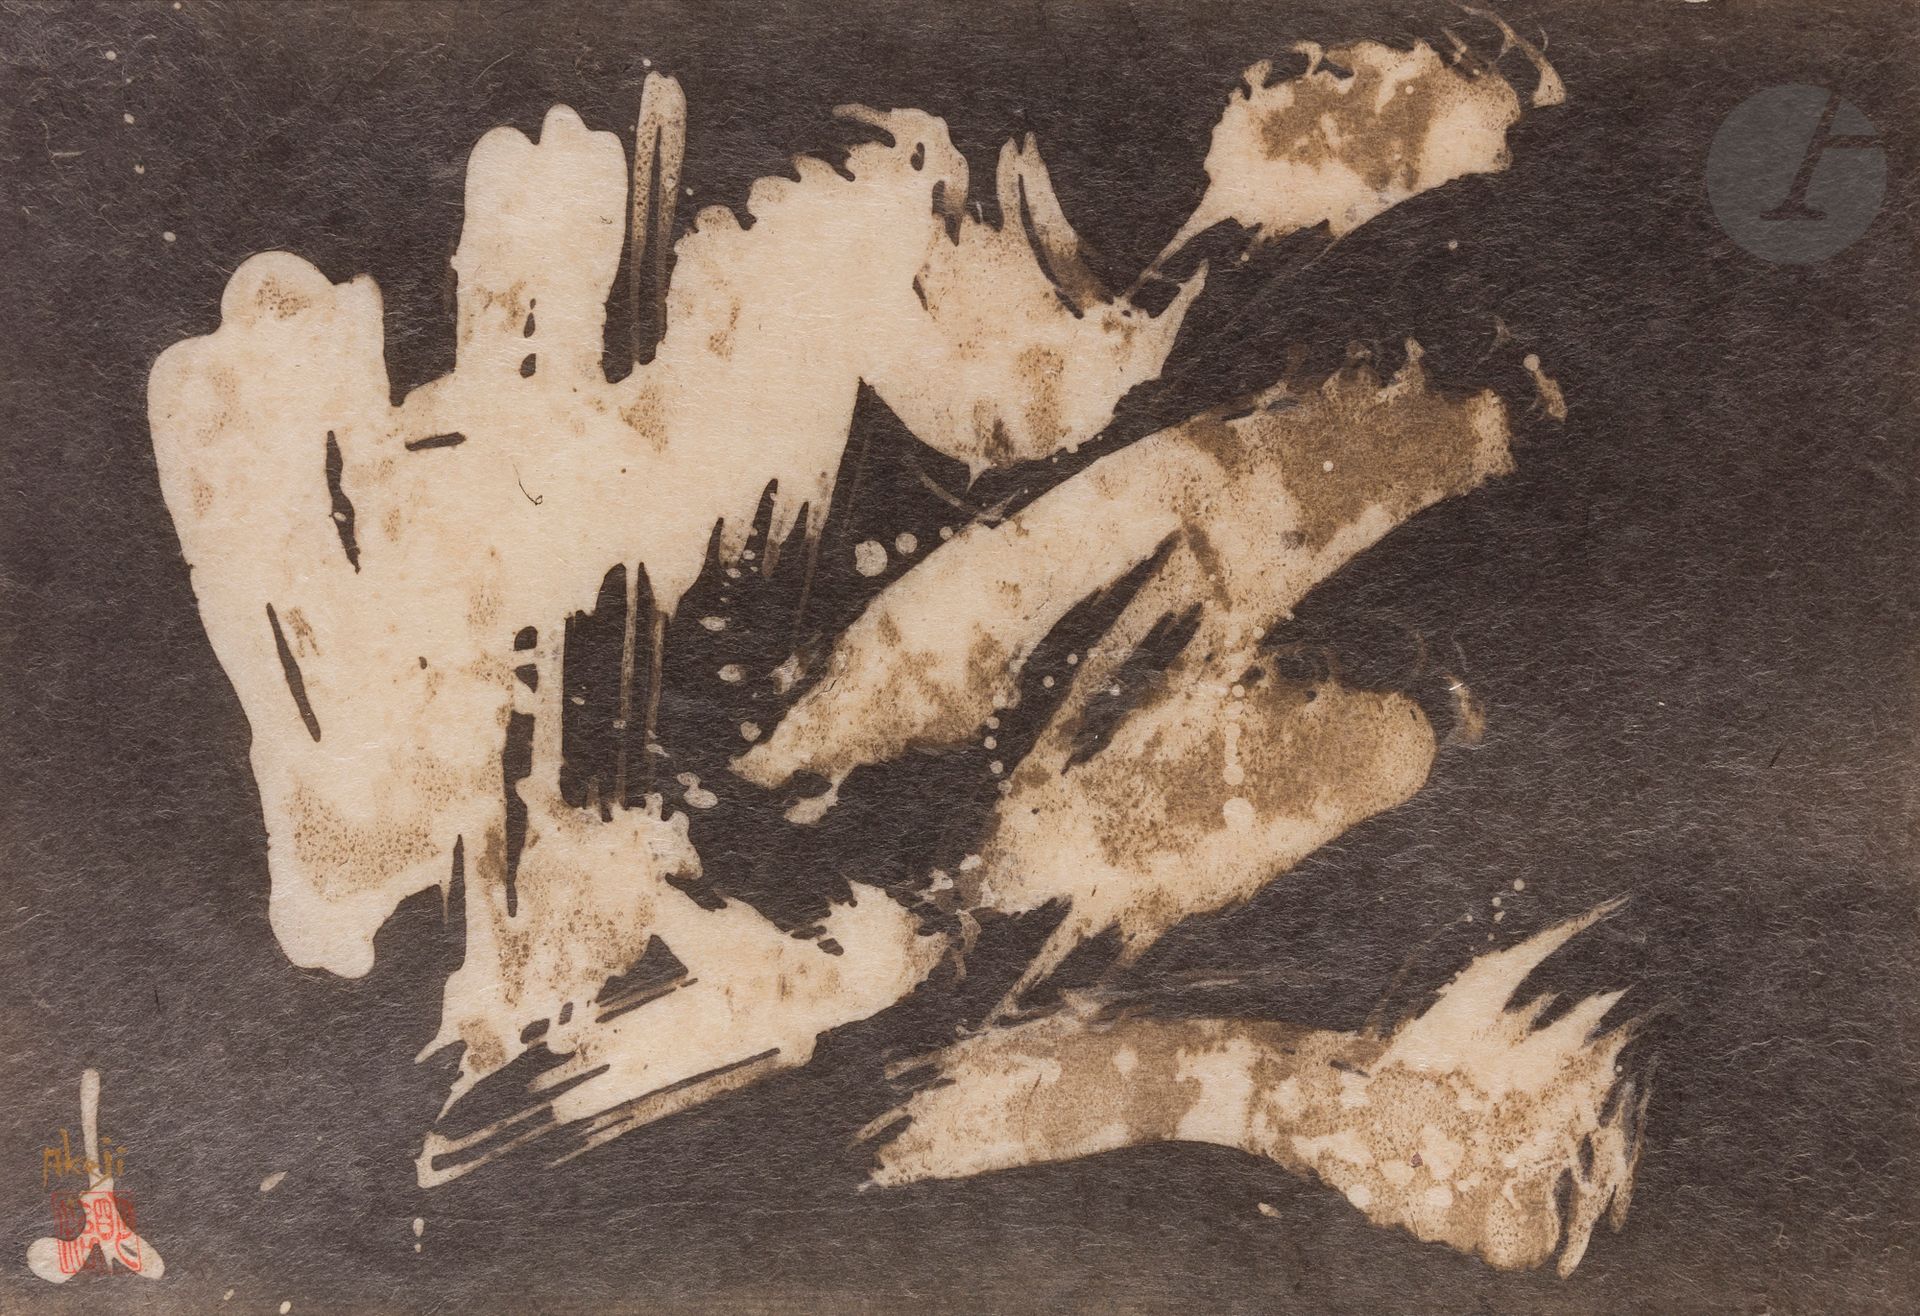 Null AKEJI Sumiyoshi [日语] (1938-2018
)组成Ecre
.
左下方有签名。
艺术家的红色印章。
31 x 44 厘米